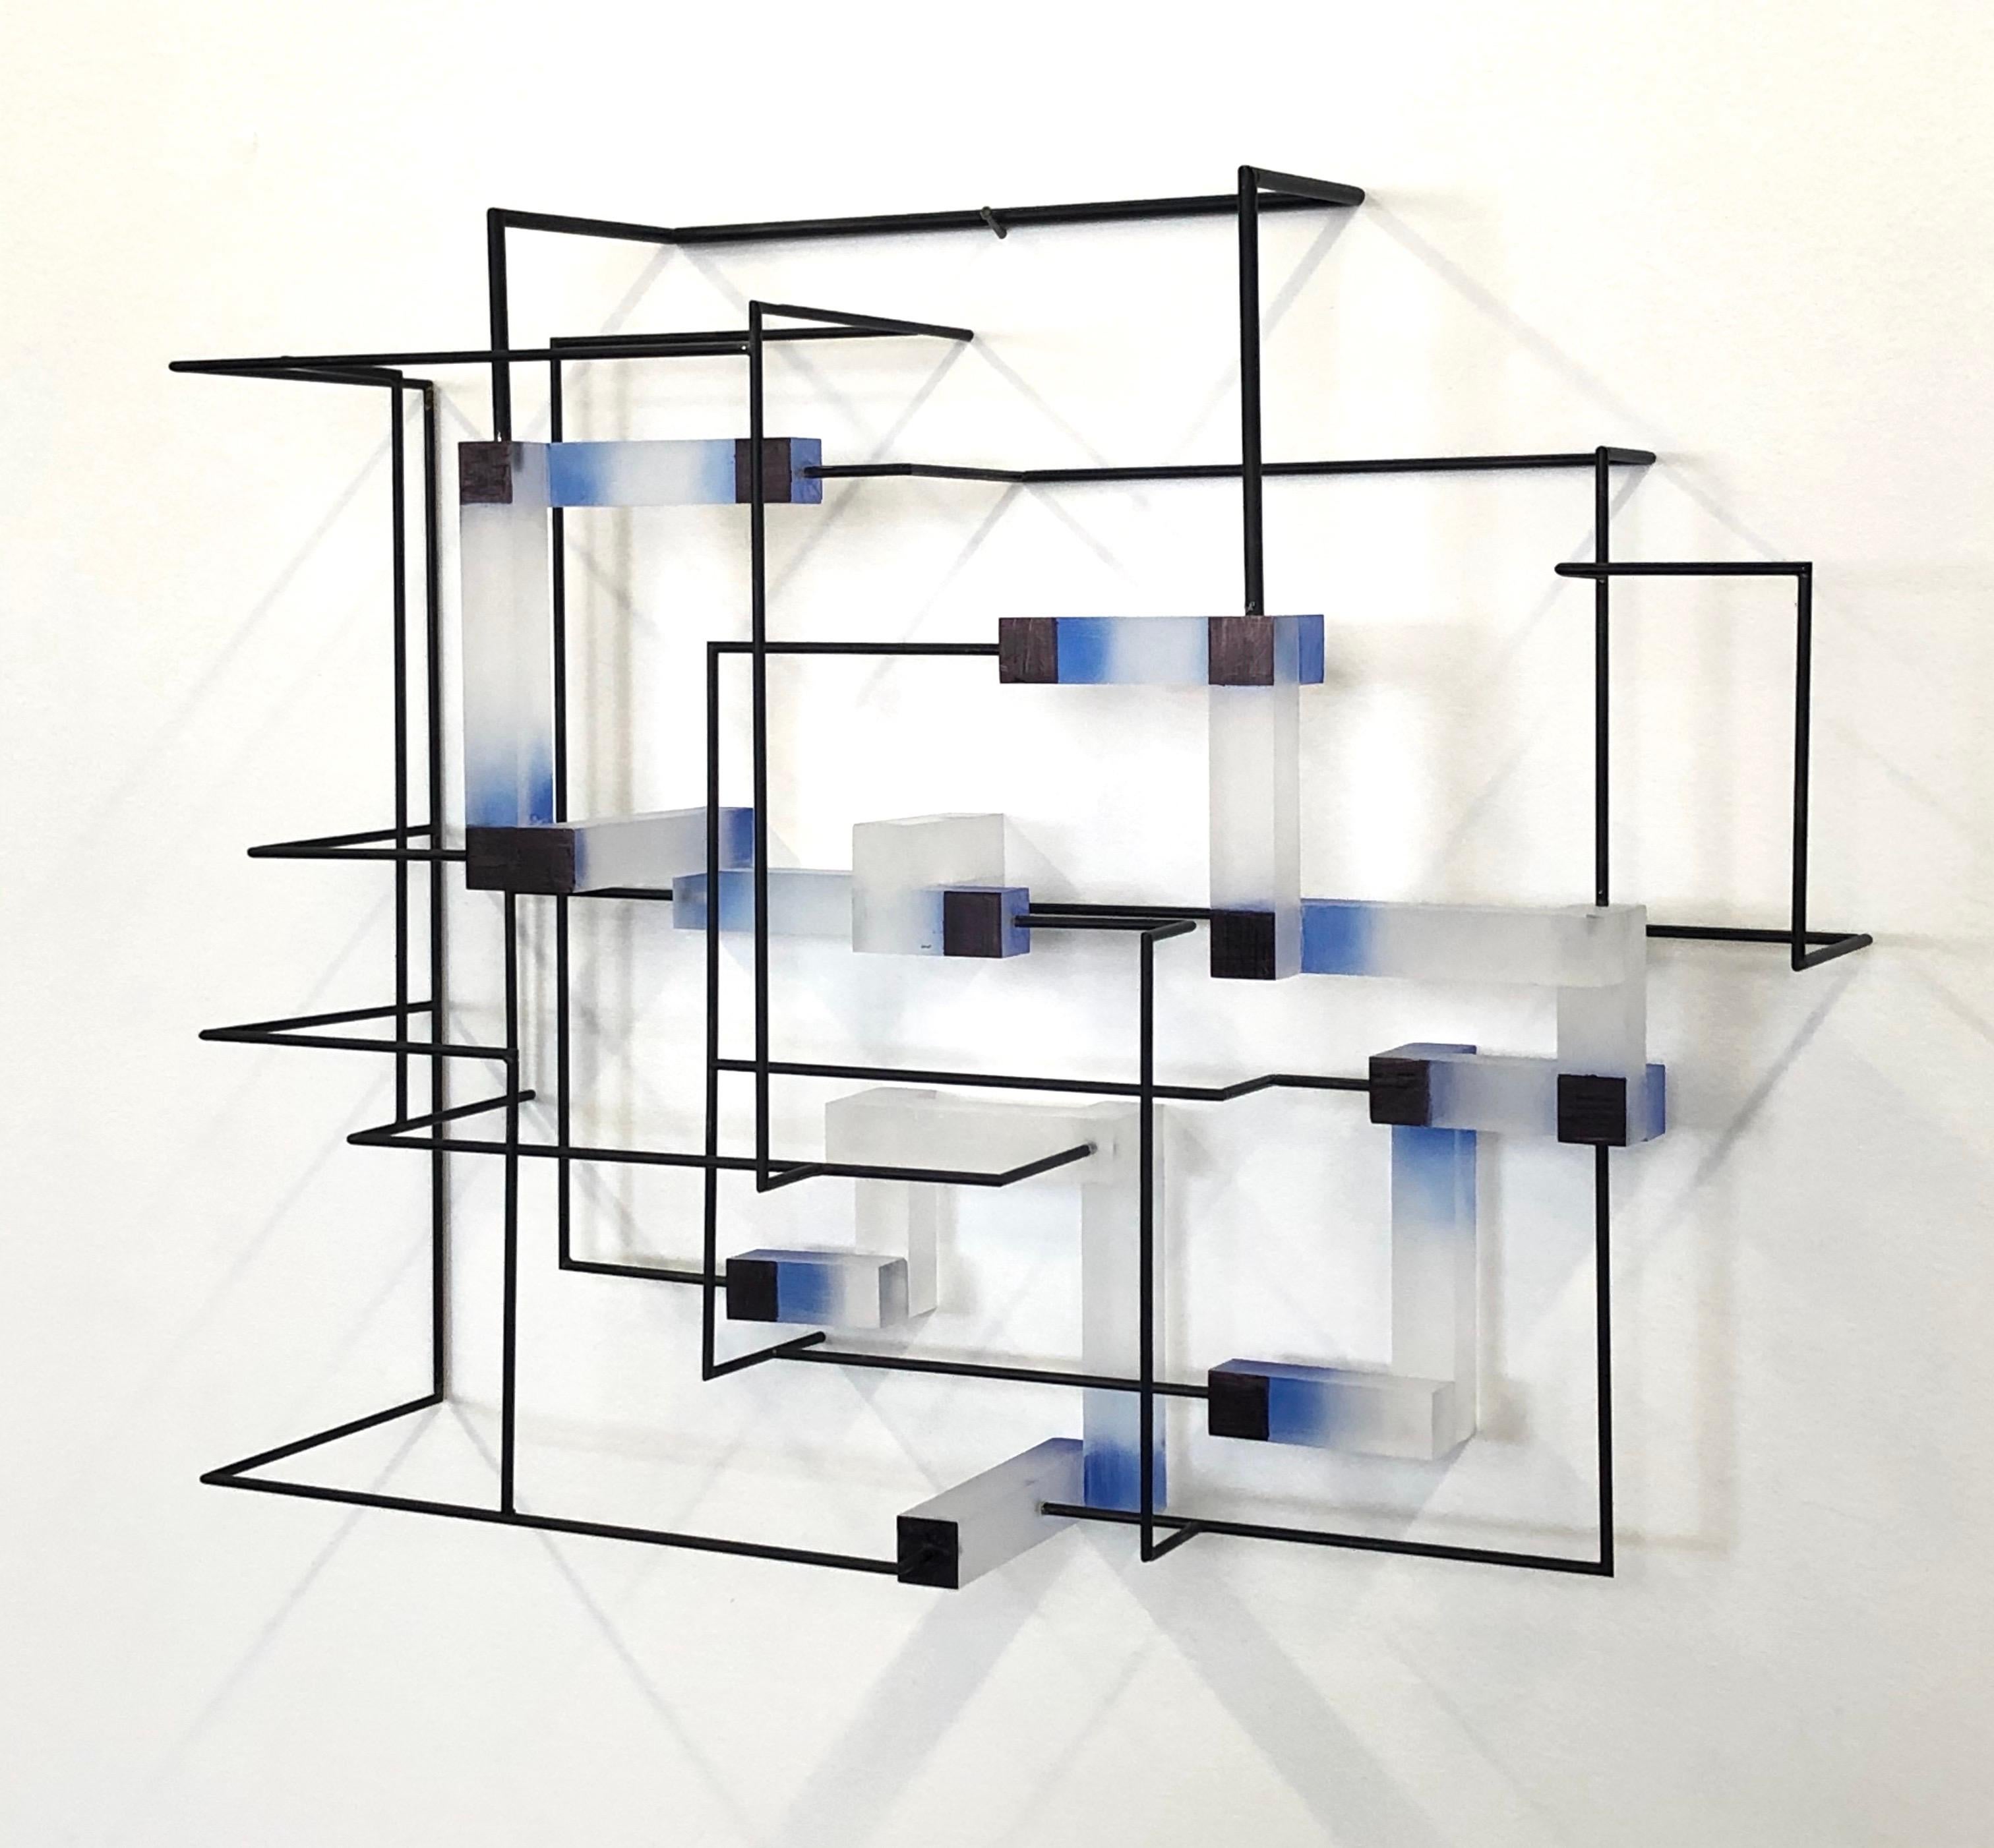 Zeitgenössische moderne abstrakte geometrische Skulptur in Blau – Sculpture von Greg Chann